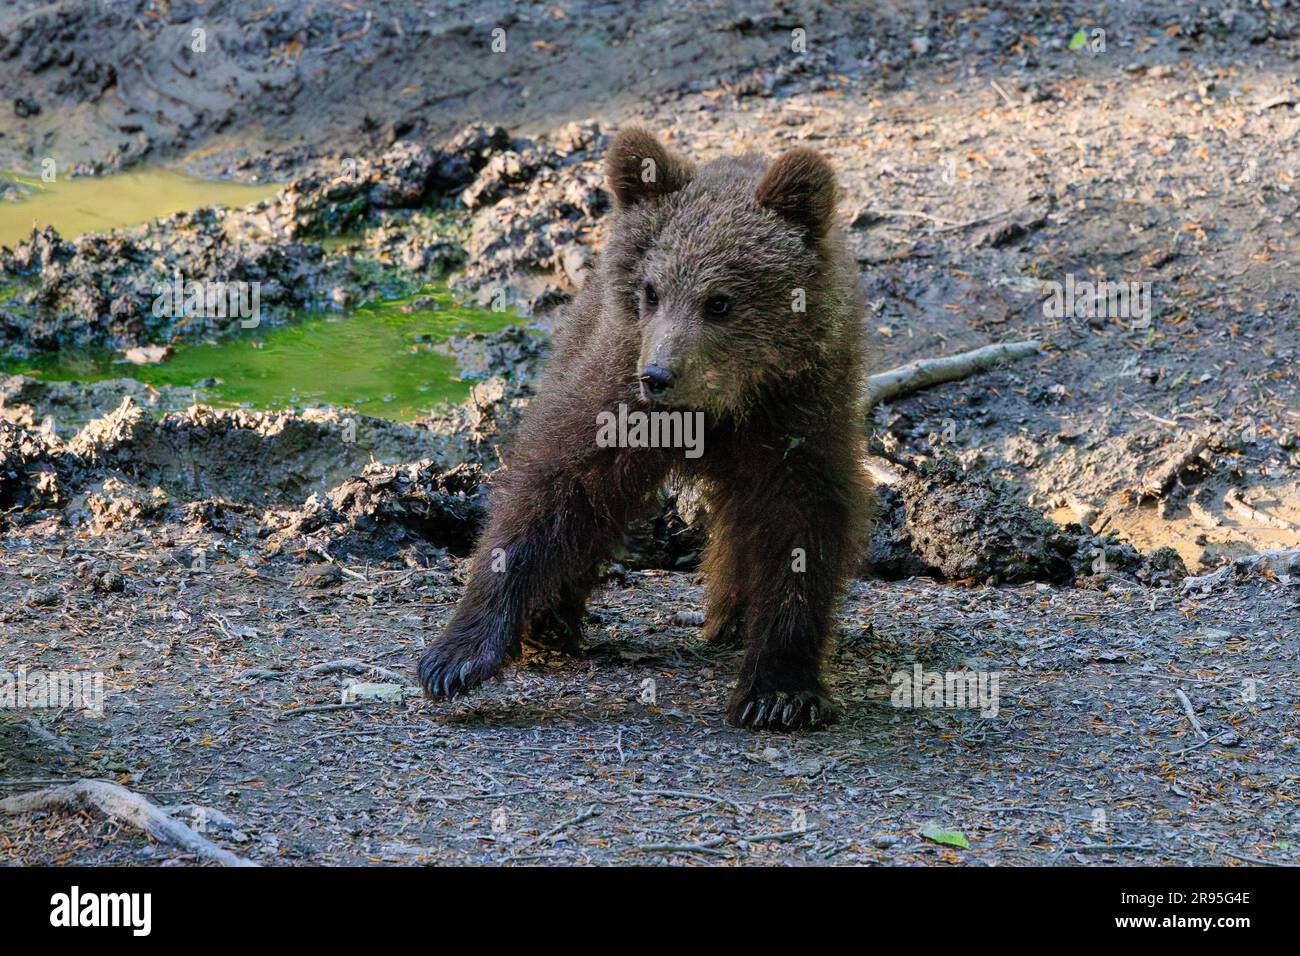 grazioso cucciolo di orso che cammina in una radura forestale al crepuscolo in un tour di osservazione degli orsi in slovenia Foto Stock